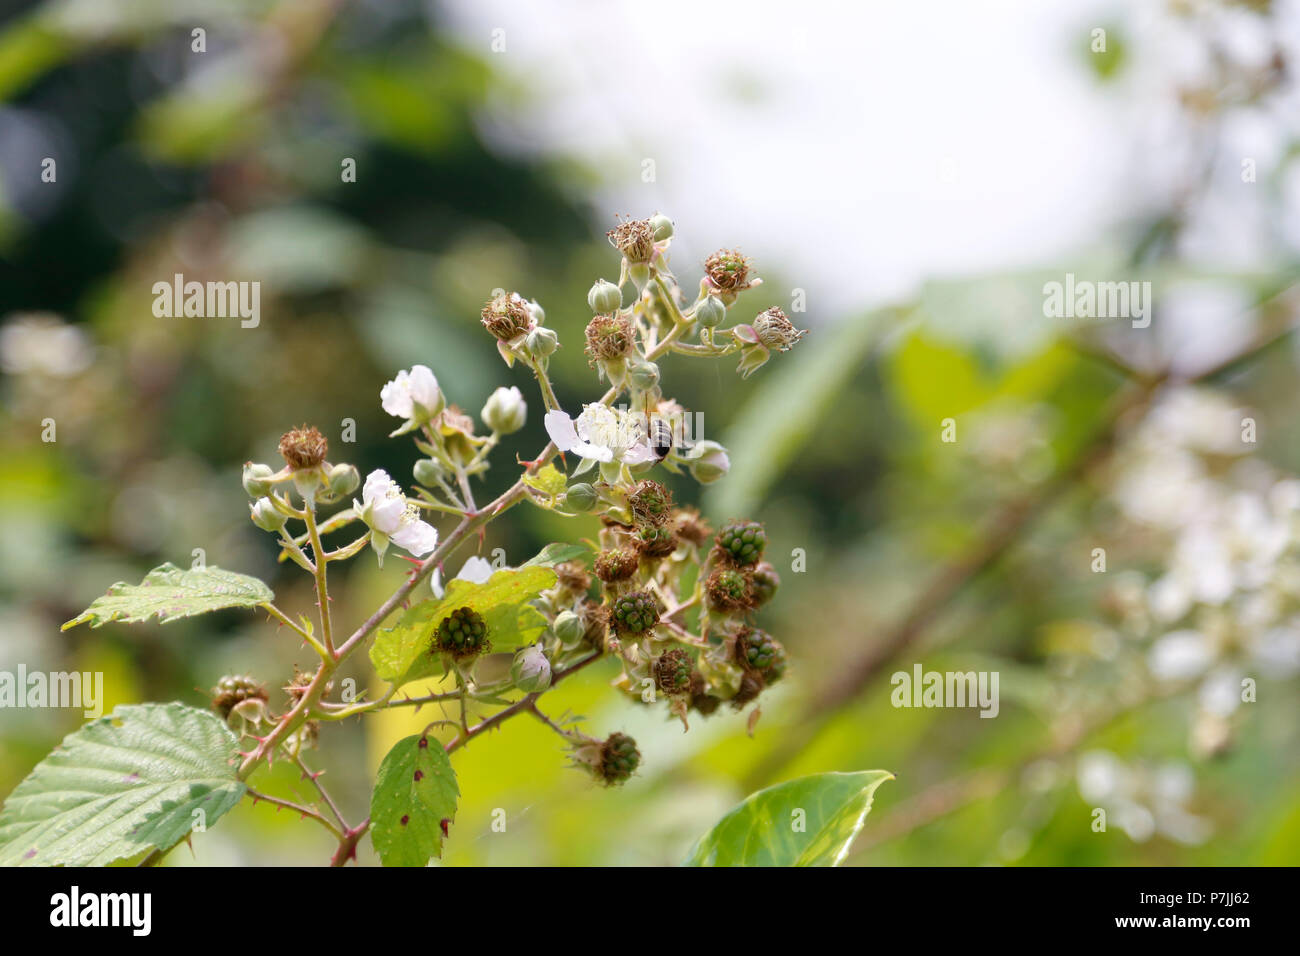 Honey Bee on blackberry flower Stock Photo